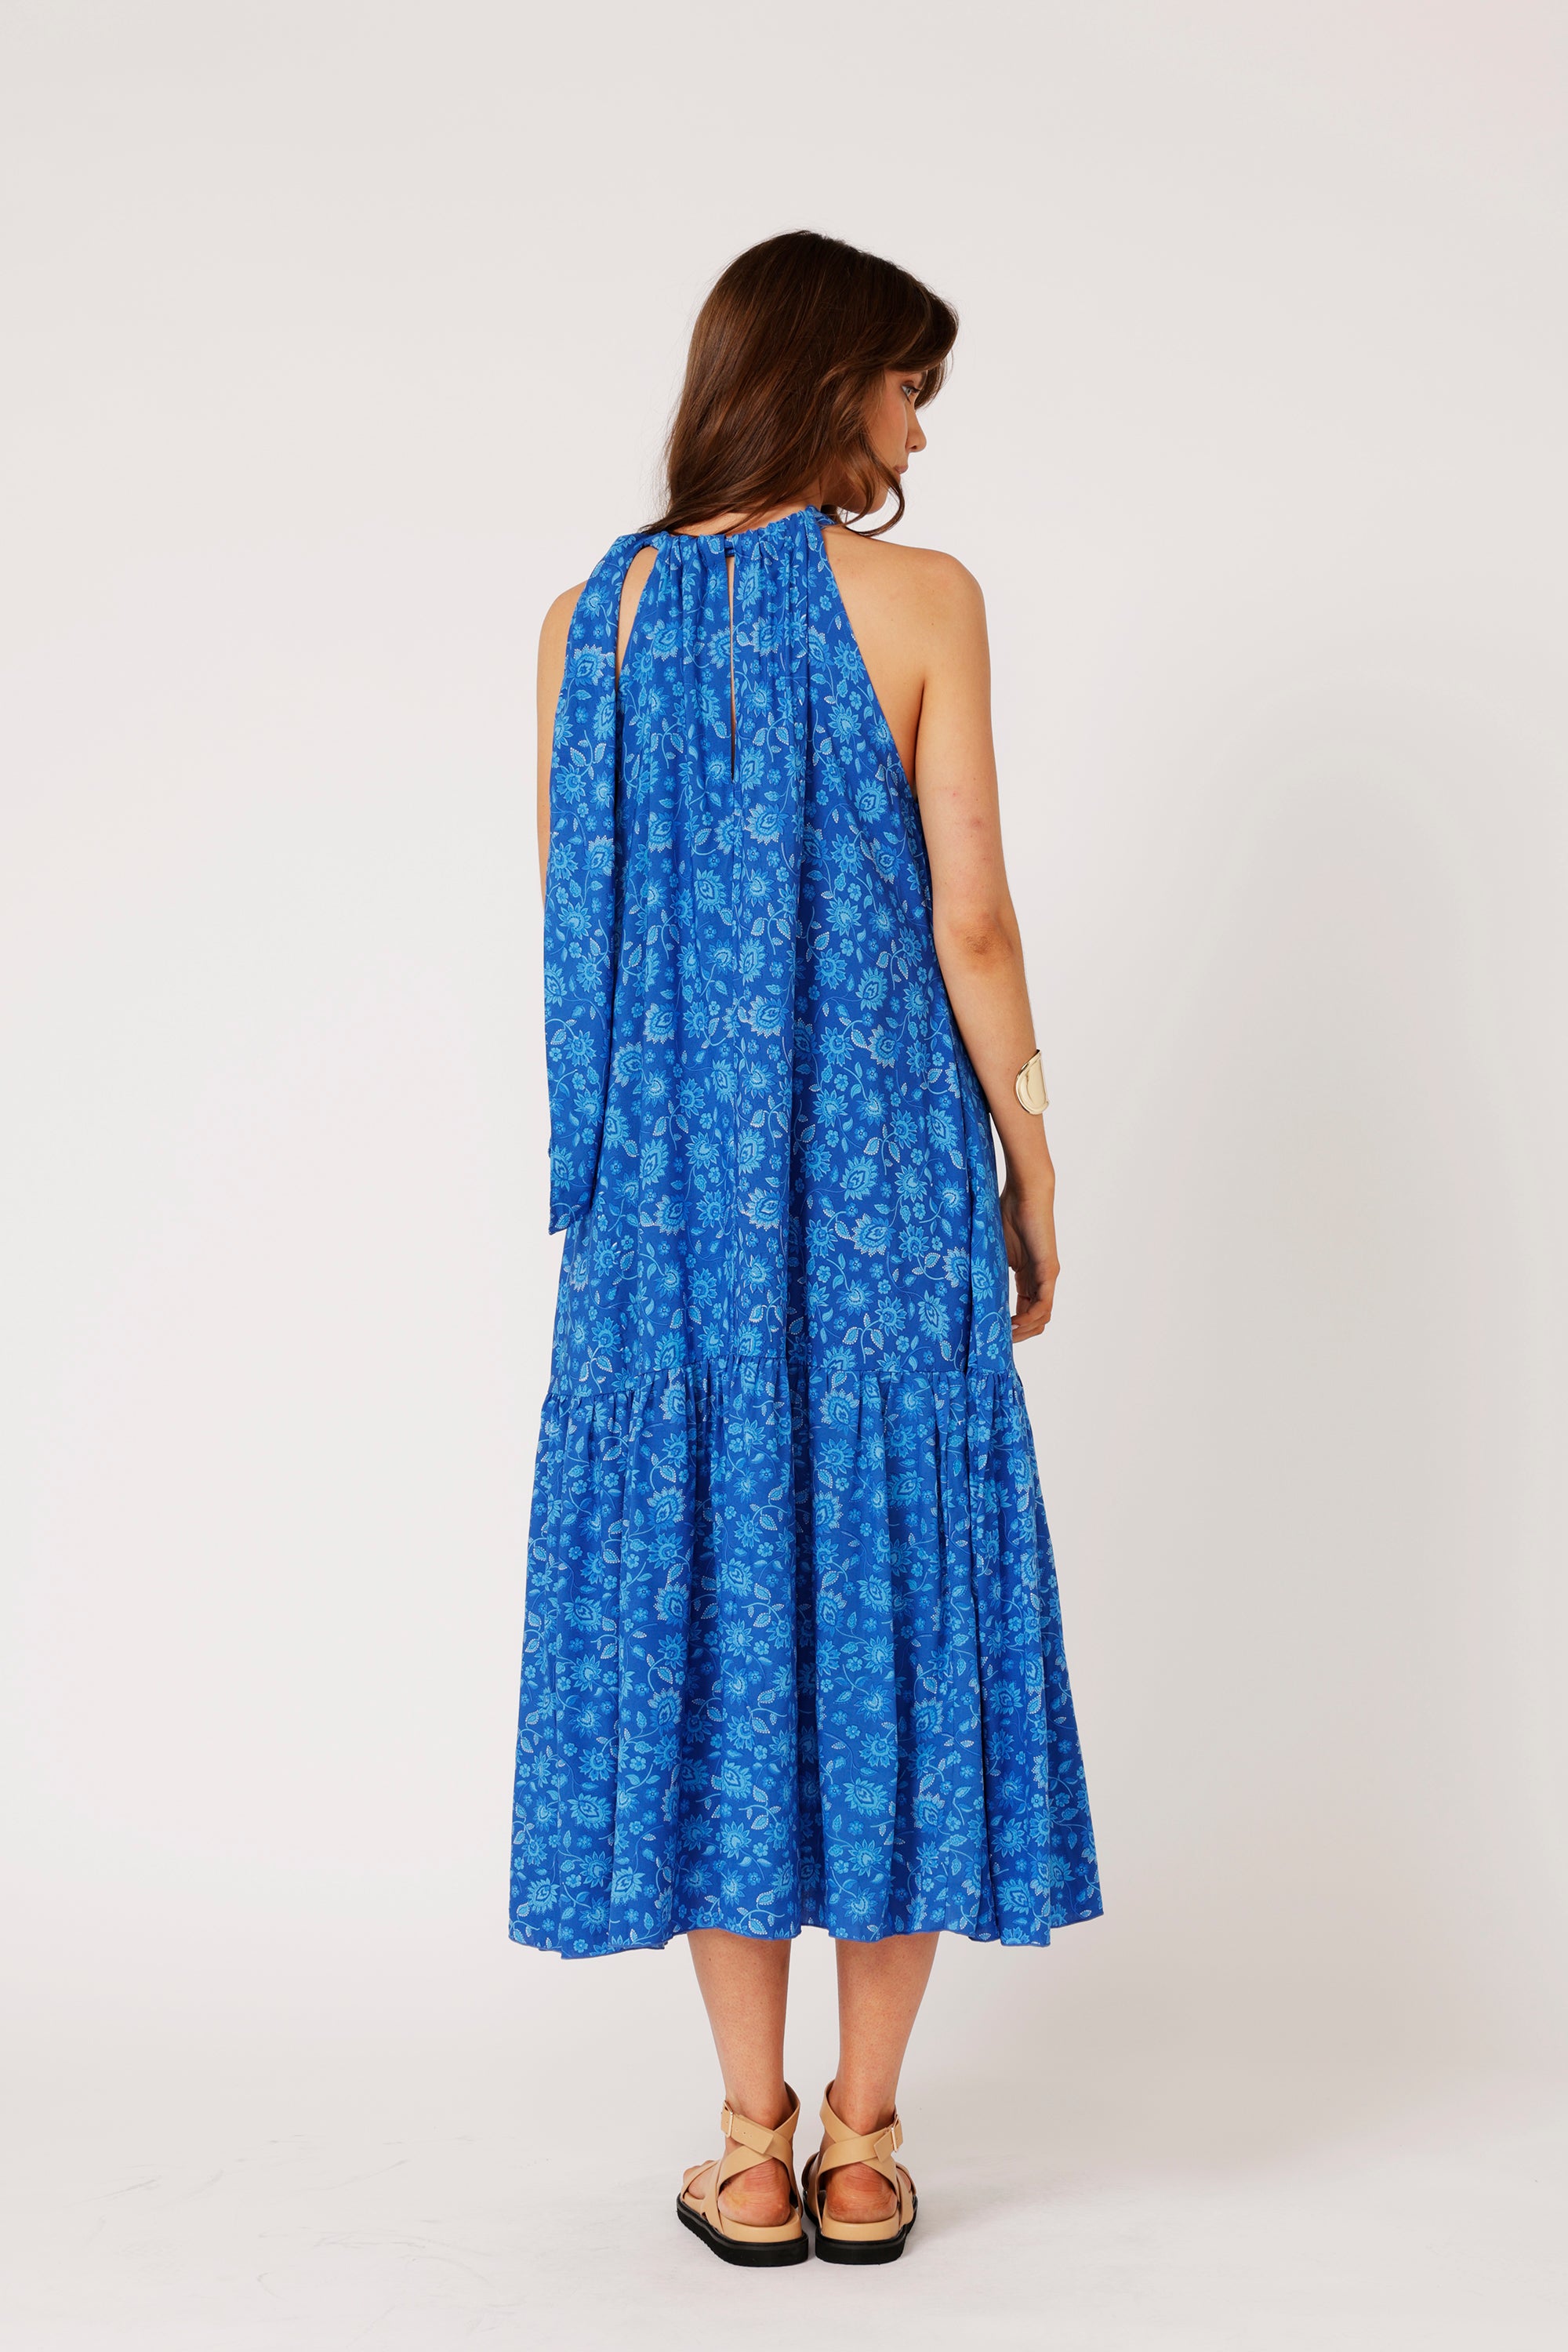 Saffron Road | Resort Dress | Maxi Dress | Blue Hawaii